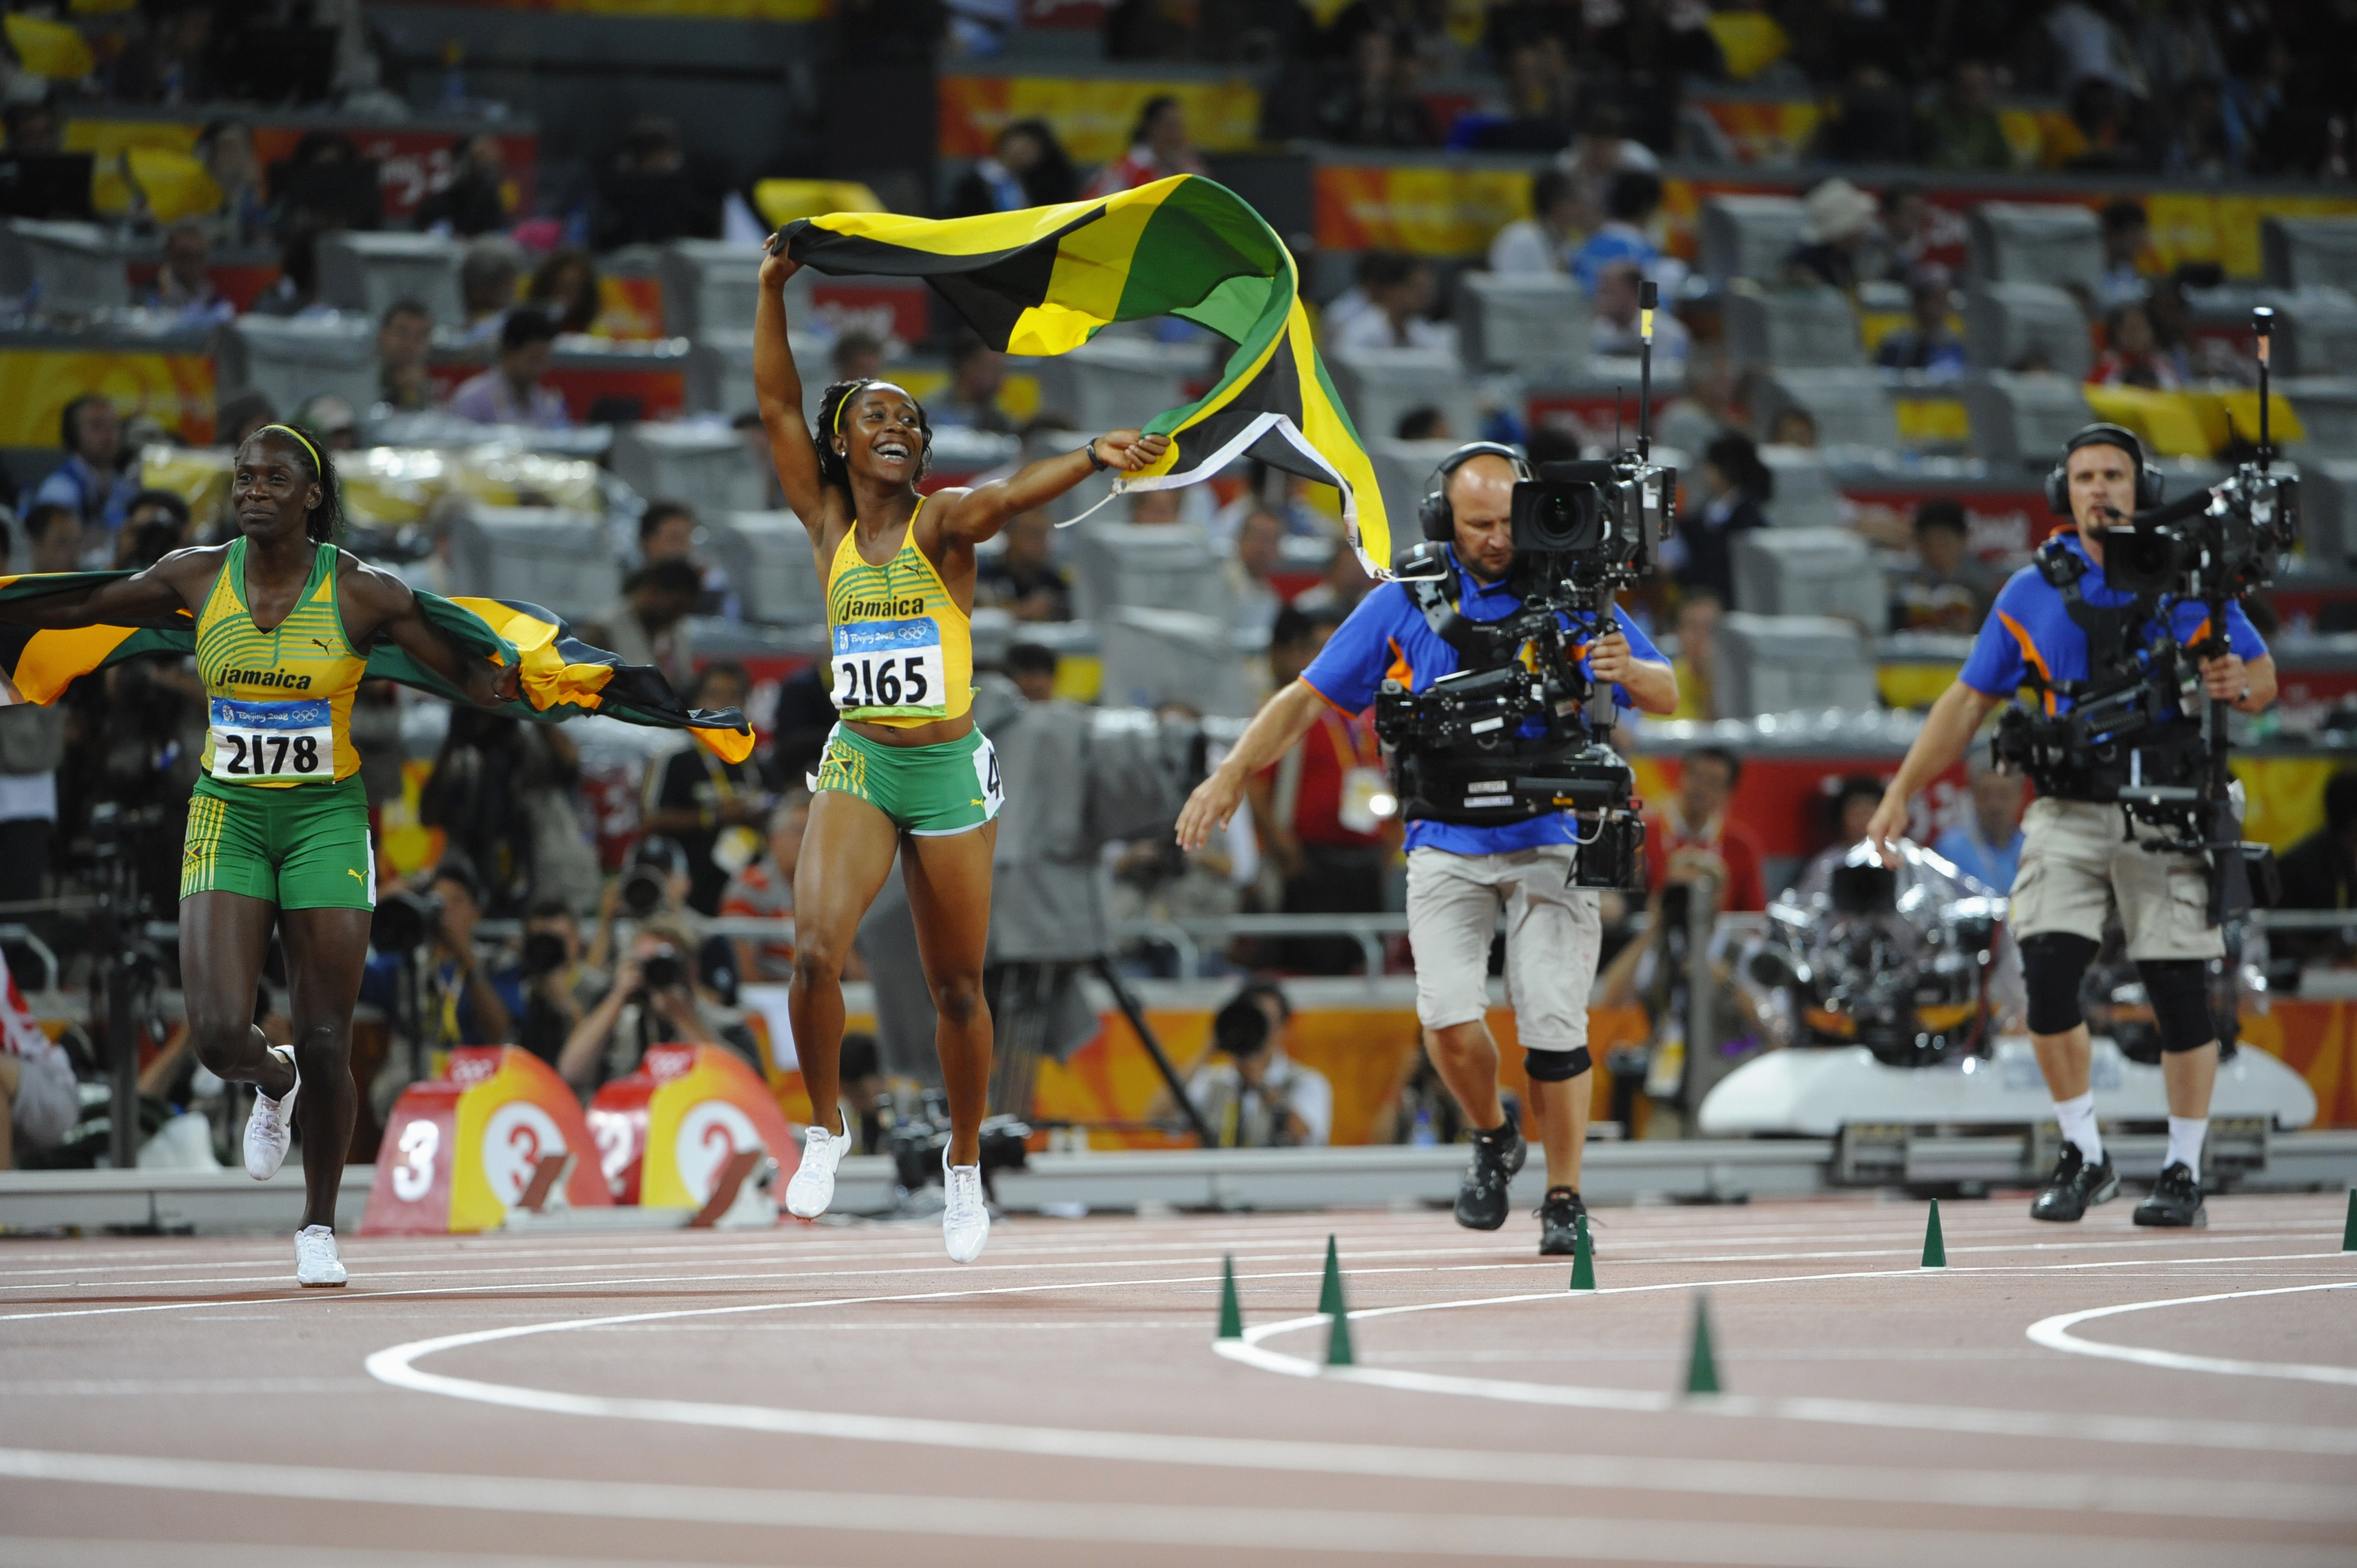 JO Beijing 2008, Athlétisme, 100m Femmes - Finale, Kerron STEWART (JAM) 2e et Shelly-Ann FRASER (JAM) 1e font un tour de piste avec le drapeau jamaicain, suivies par des cameramen.